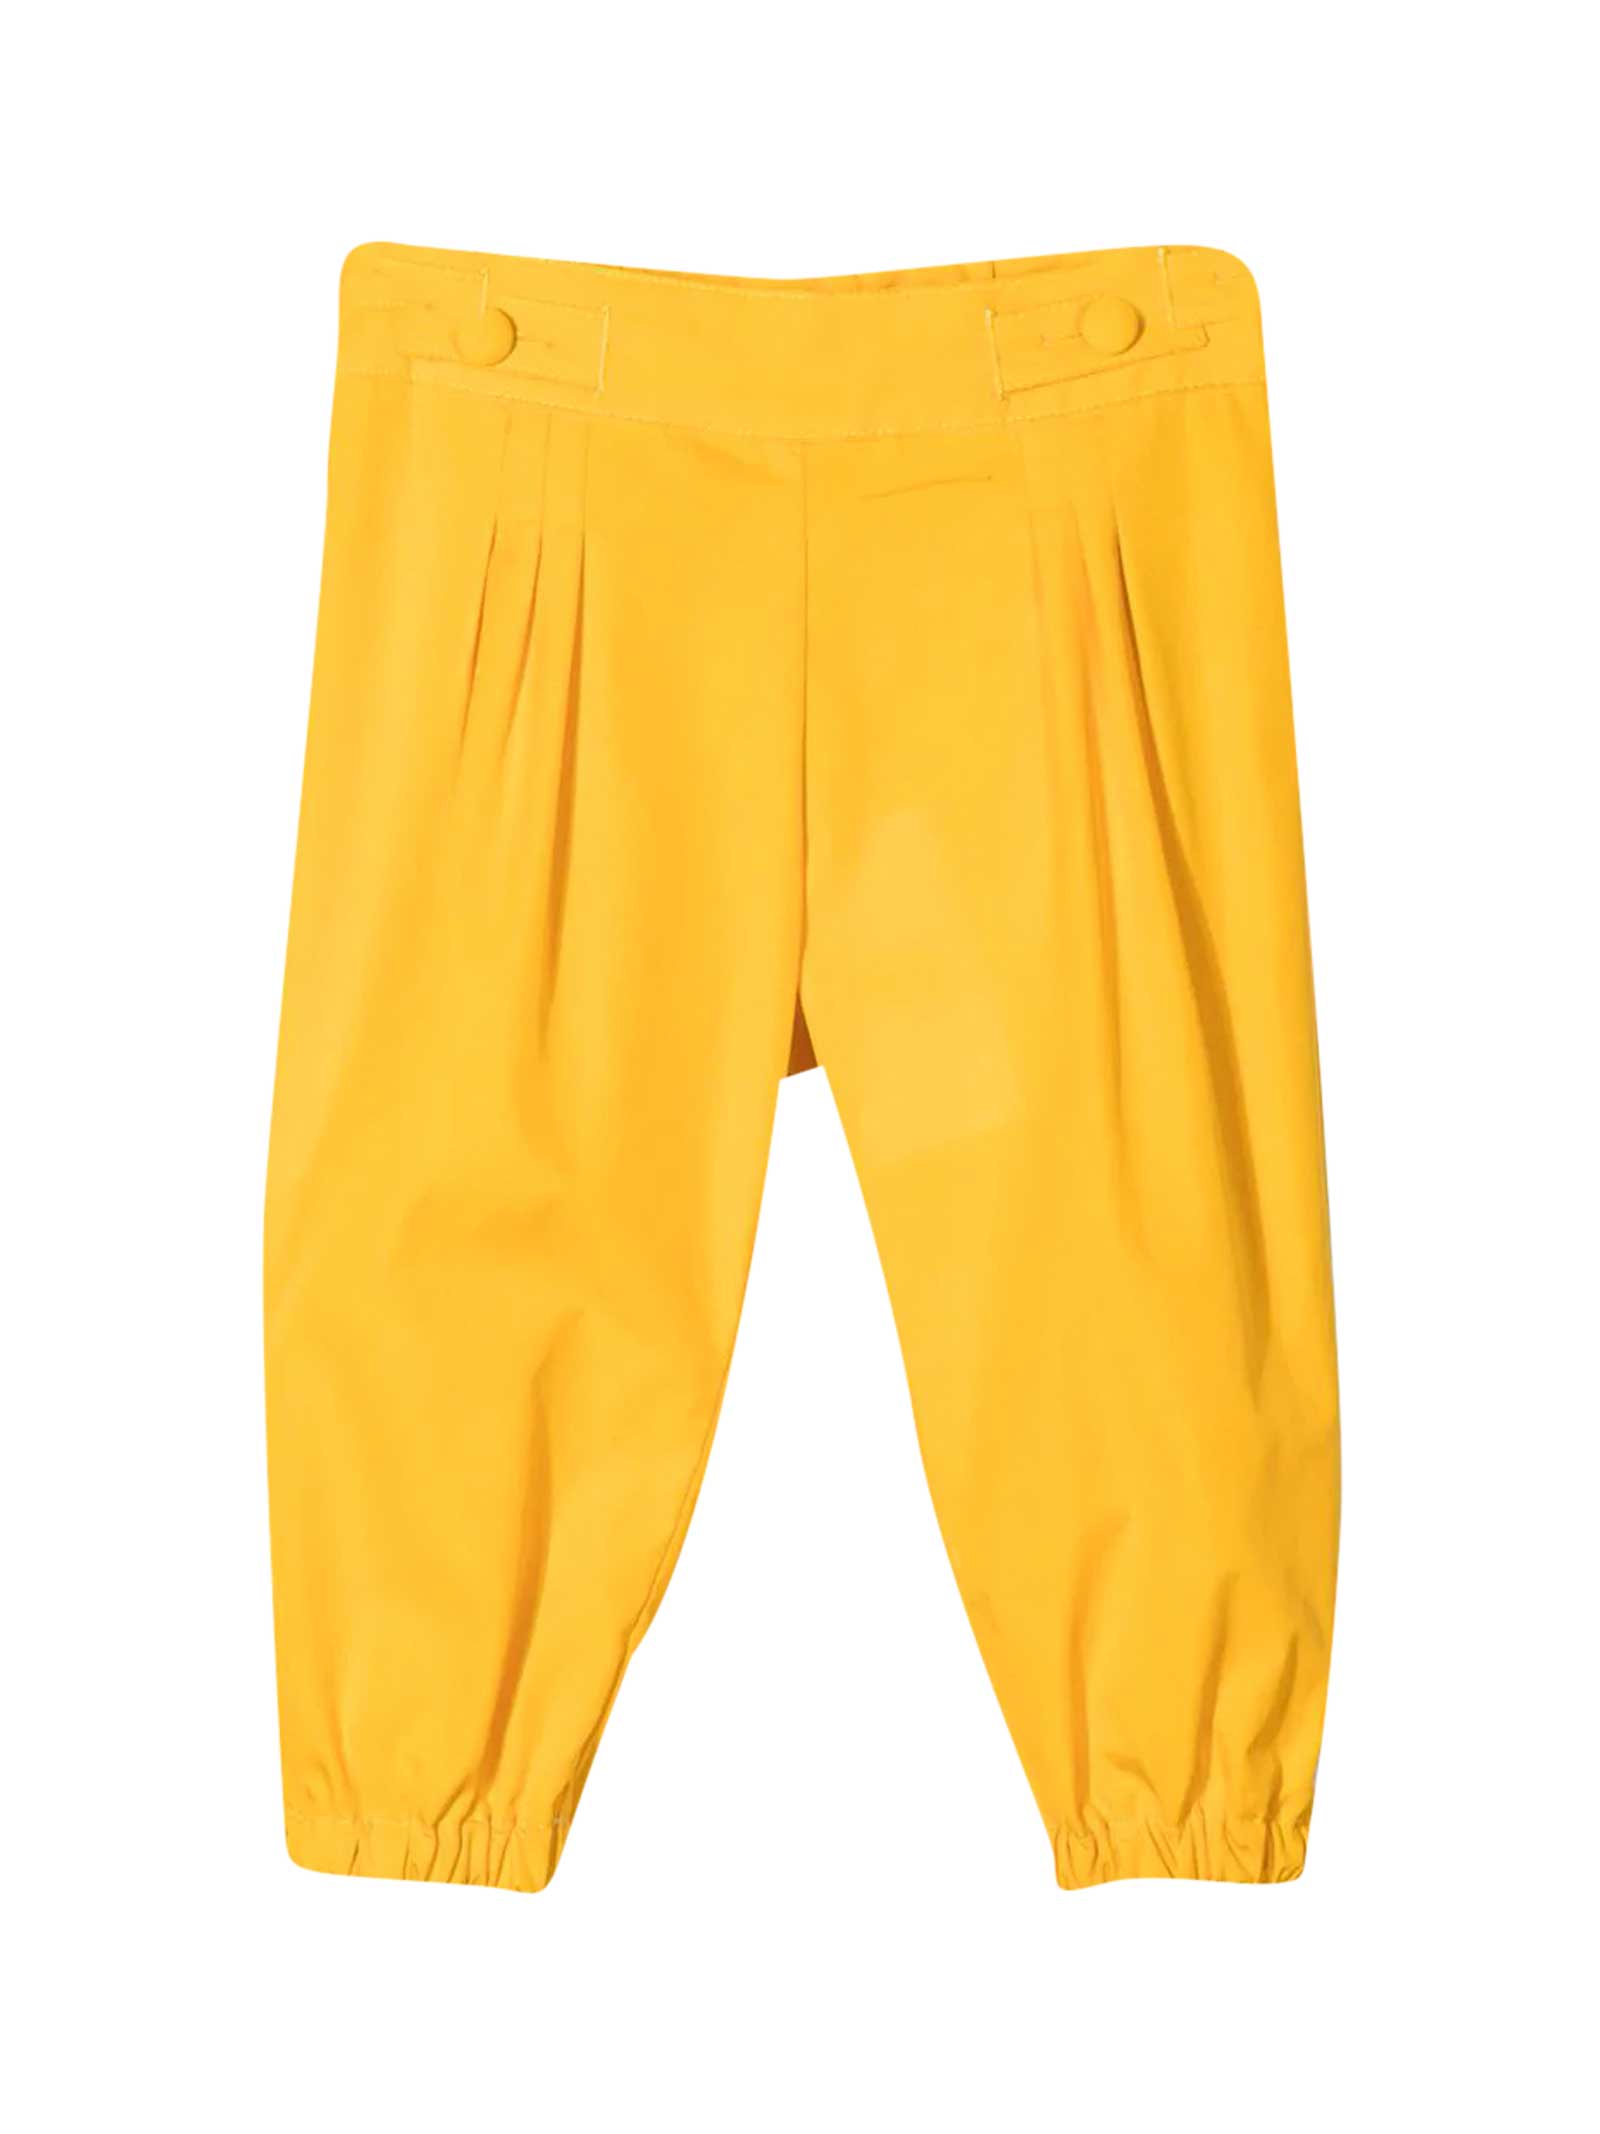 Fendi Yellow Trousers